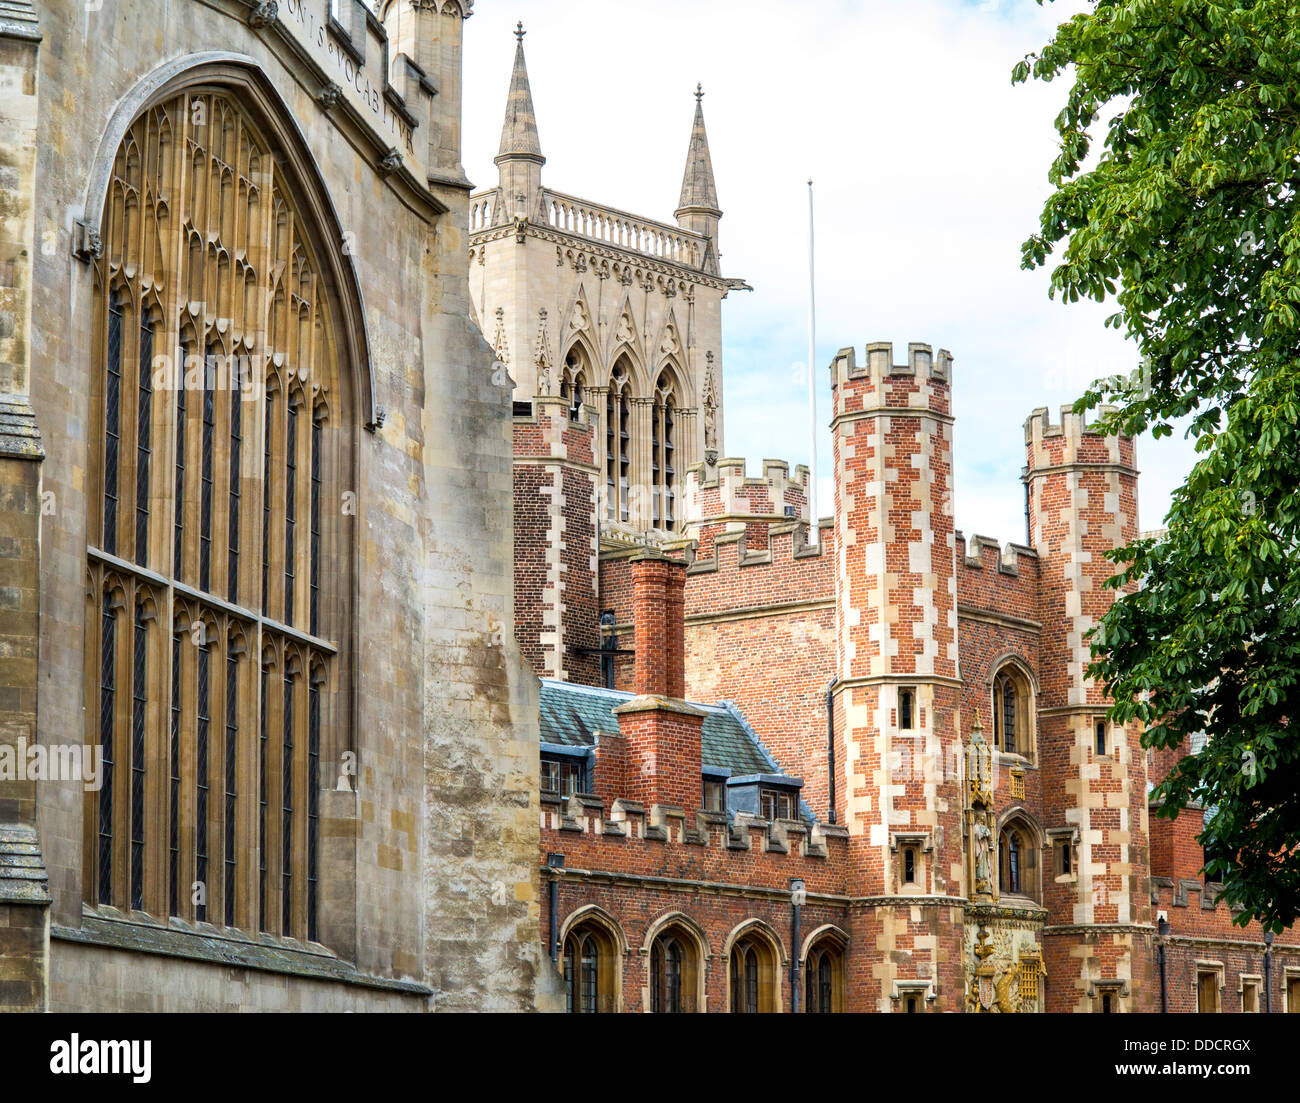 St John's College et bâtiments historiques dans la région de Trinity Street, Cambridge, Angleterre. Banque D'Images